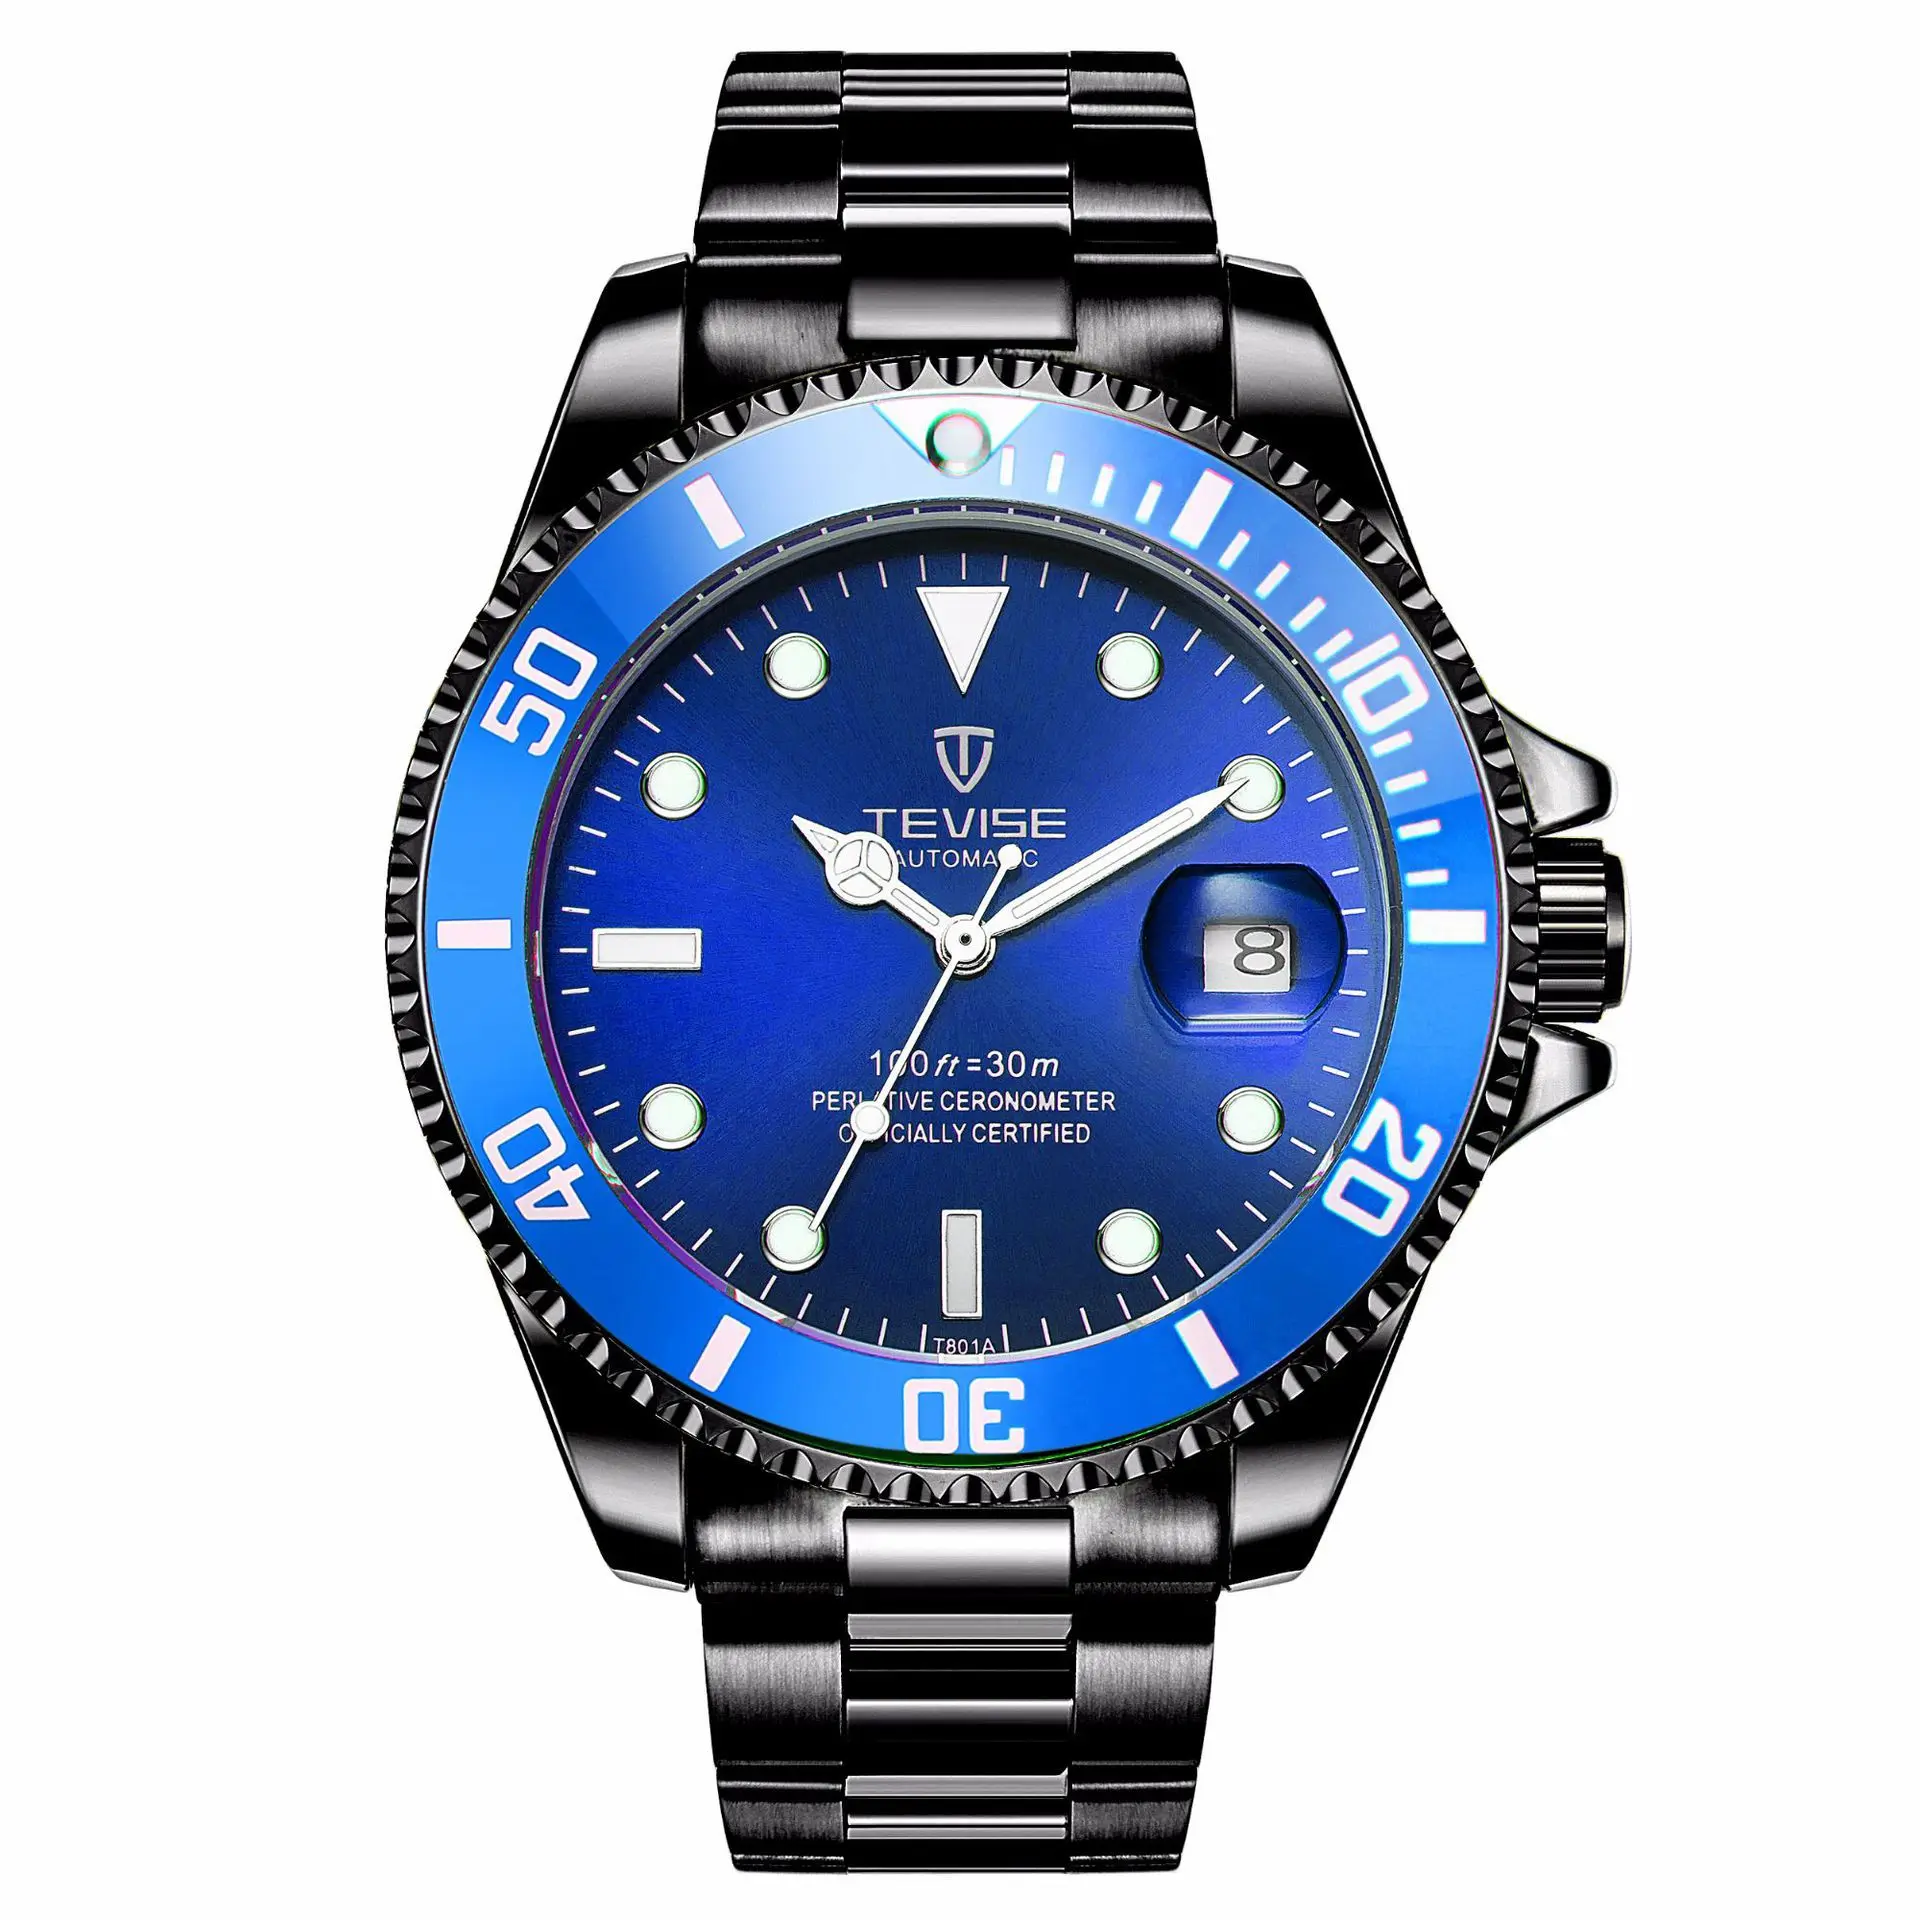 

TEVISE Twiss ye guang lv Water Ghost Watch Men Fully Automatic Mechanical Wrist Watch Sports Fine Steel Belt Watrproof Watch